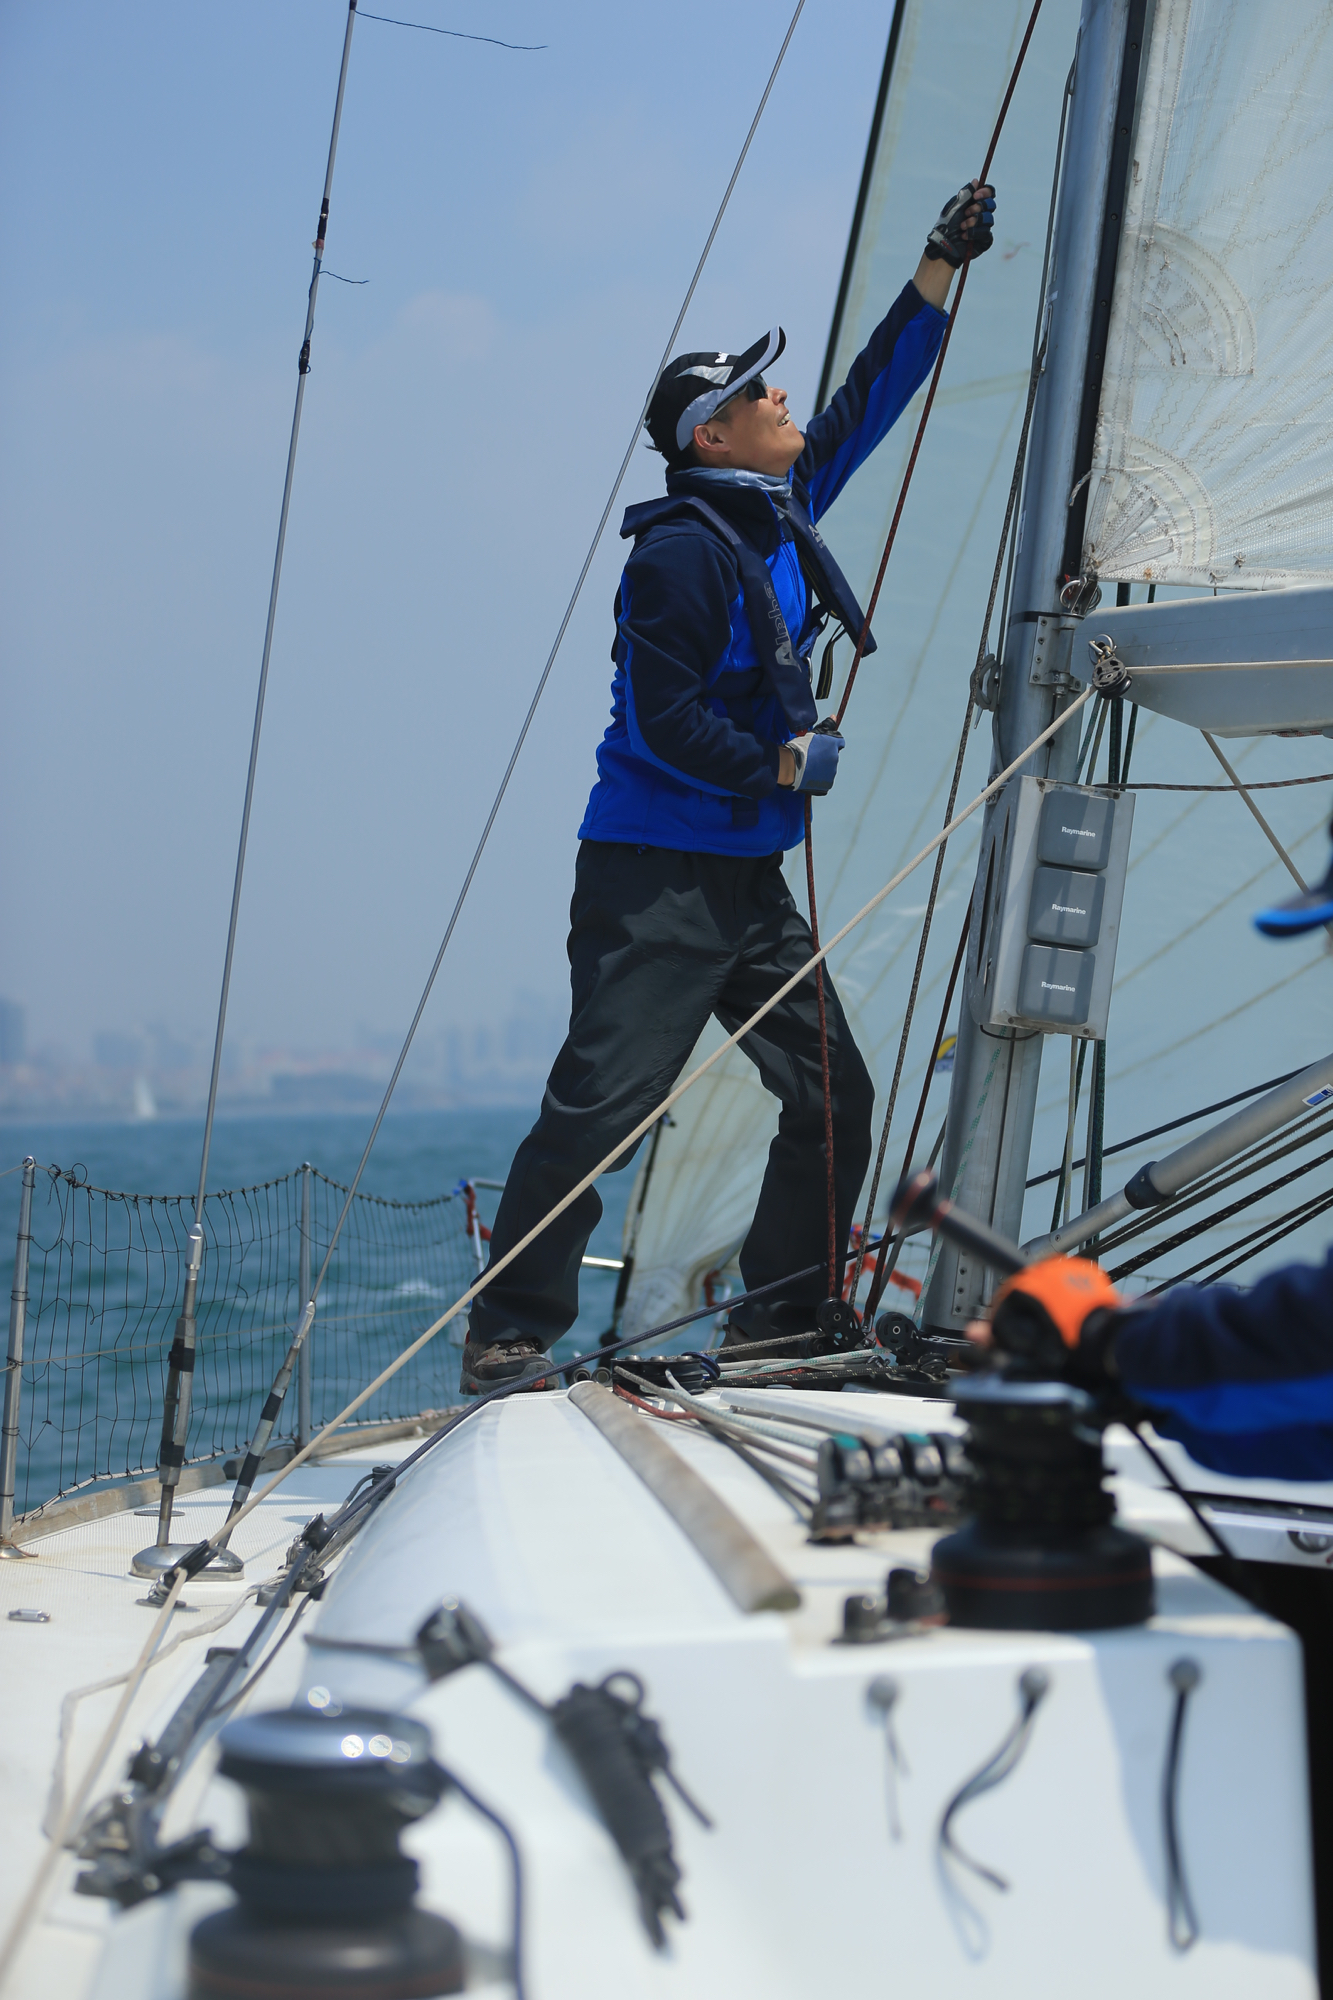 我要航海网帆船队-2015-CCOR - 026.jpg